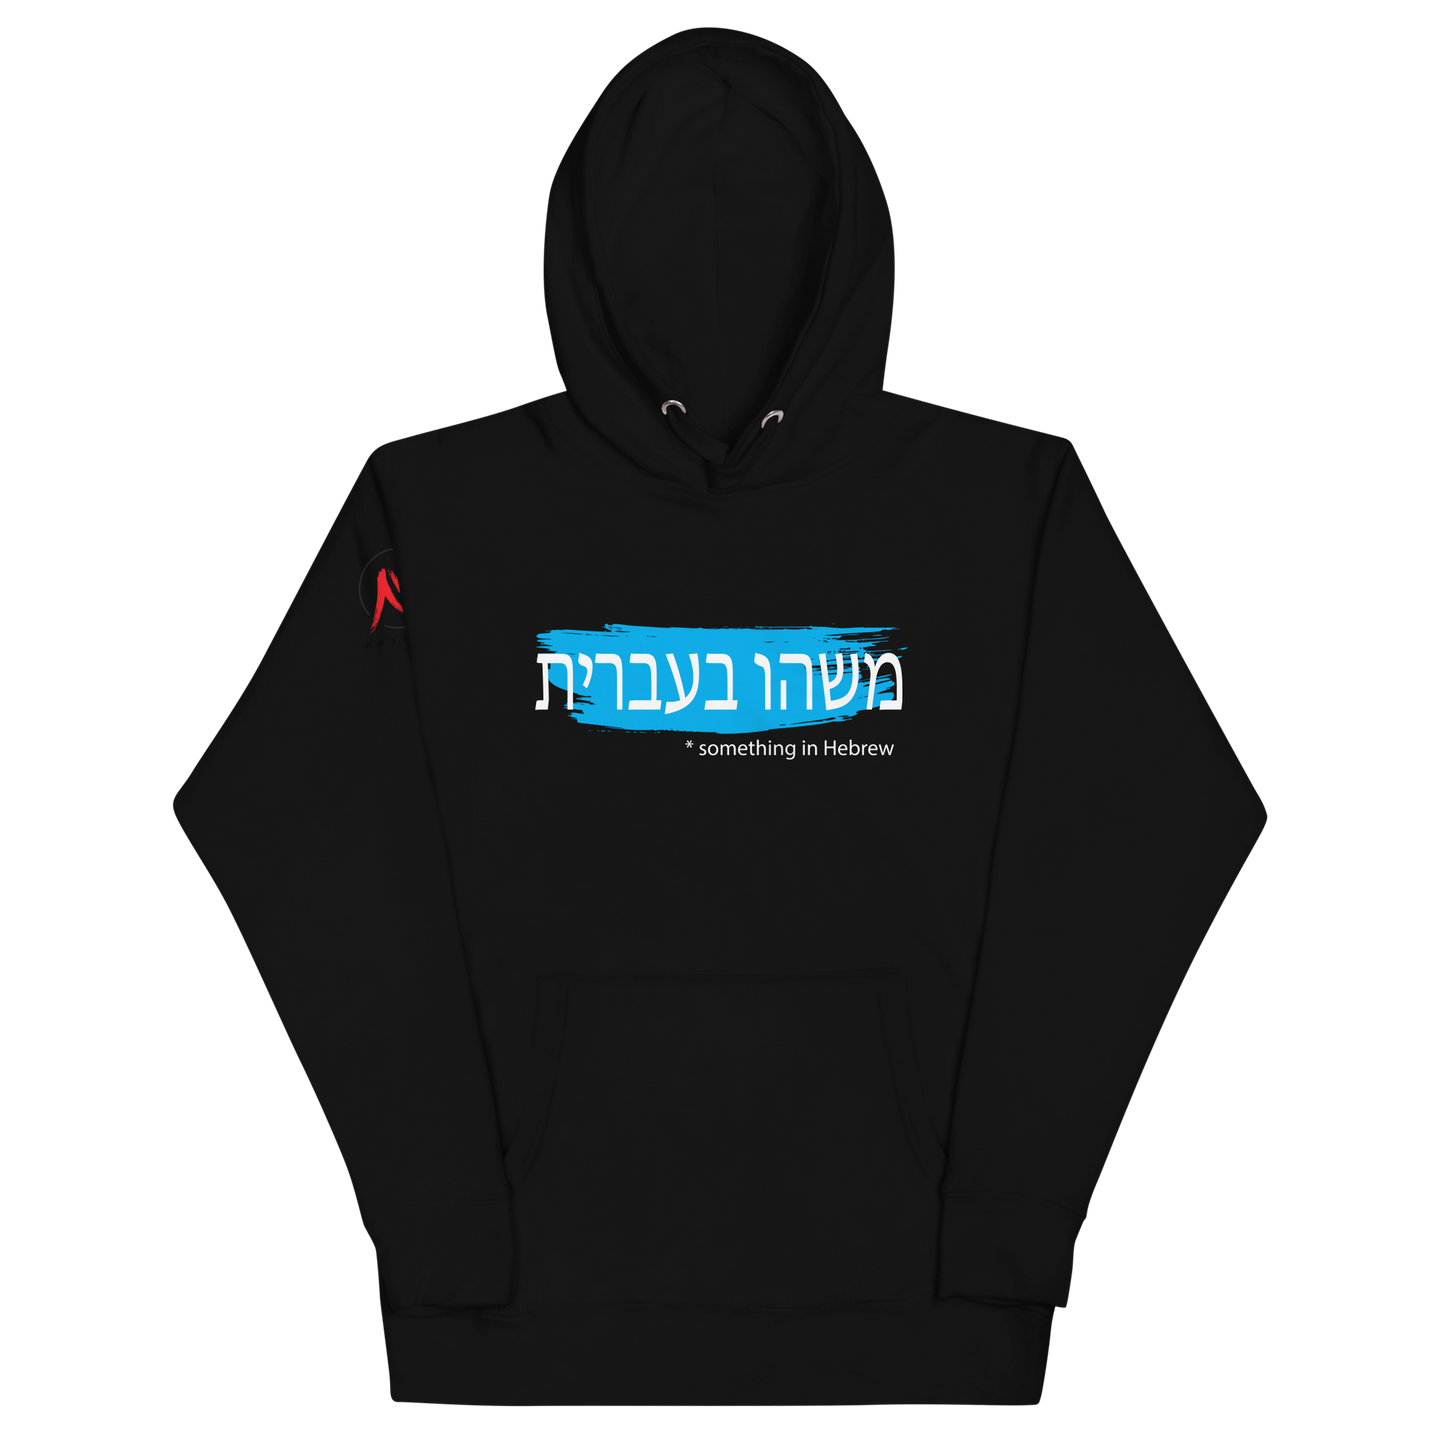 "Something in Hebrew" (Black) - Unisex Hoodie by nasmore